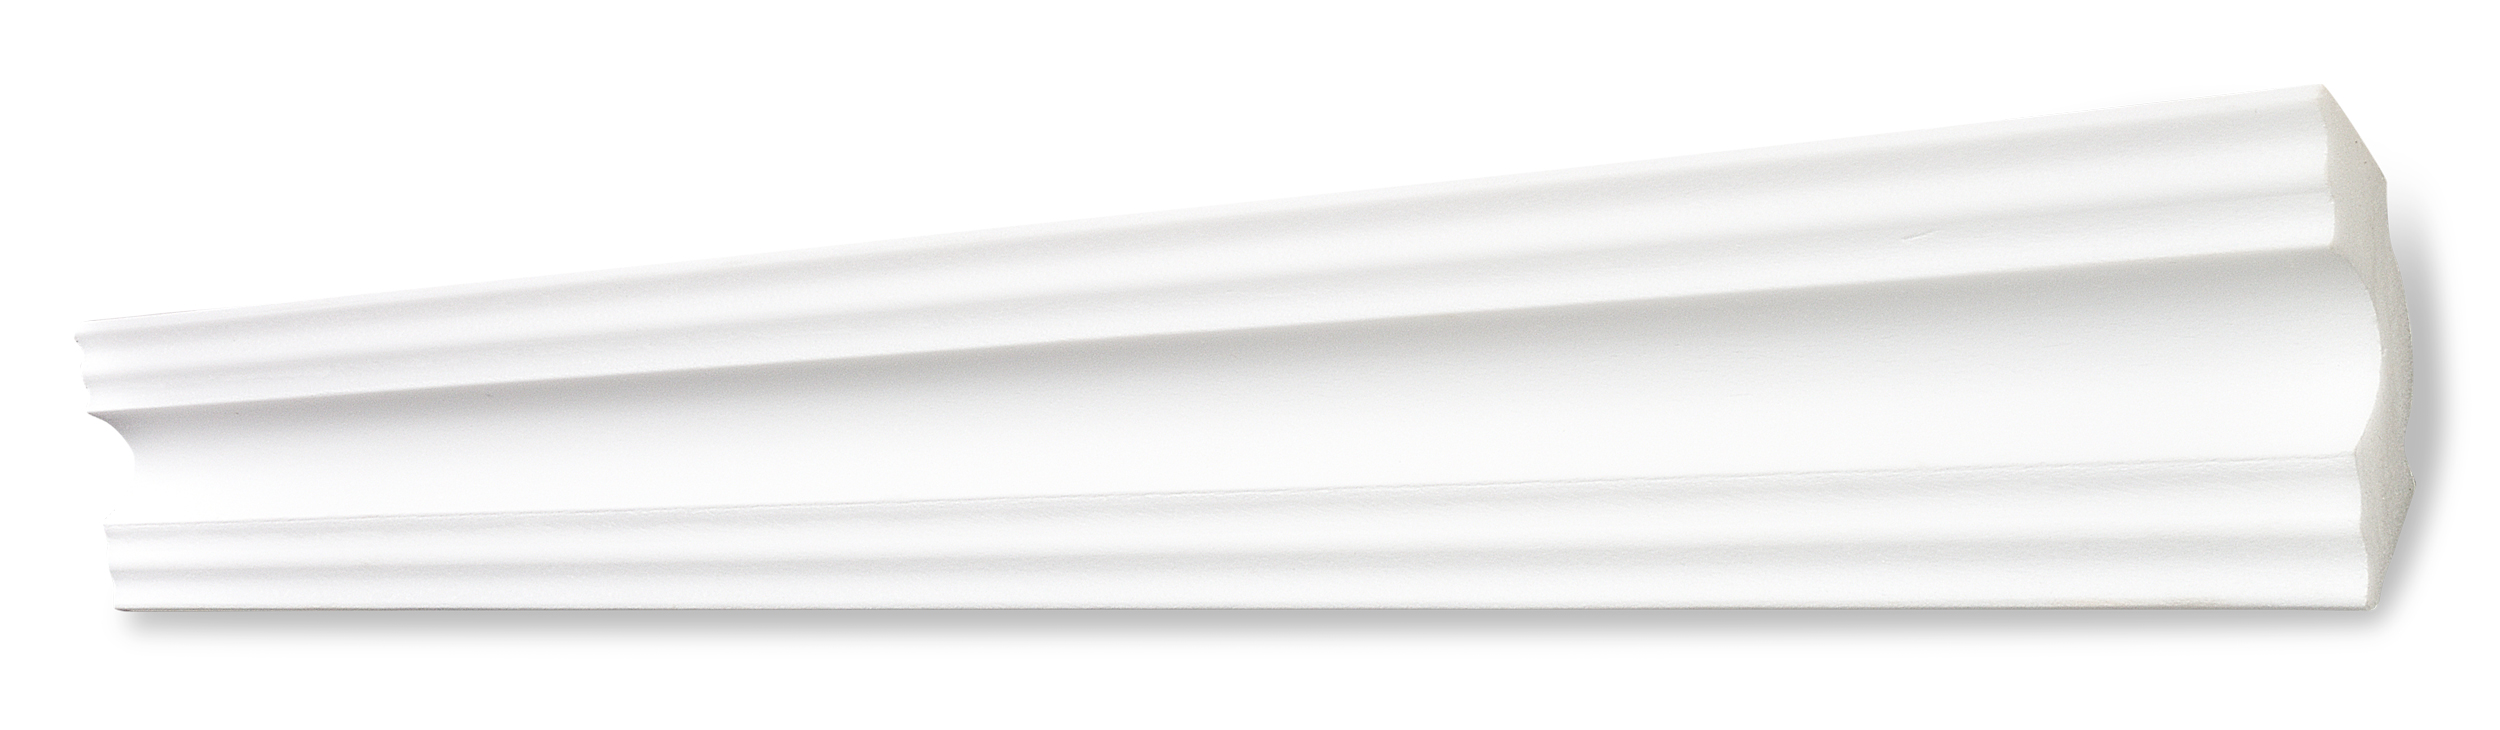 Decosa Zierprofil A50 (Sonja), weiß, 50 x 50 mm, Länge: 2 m